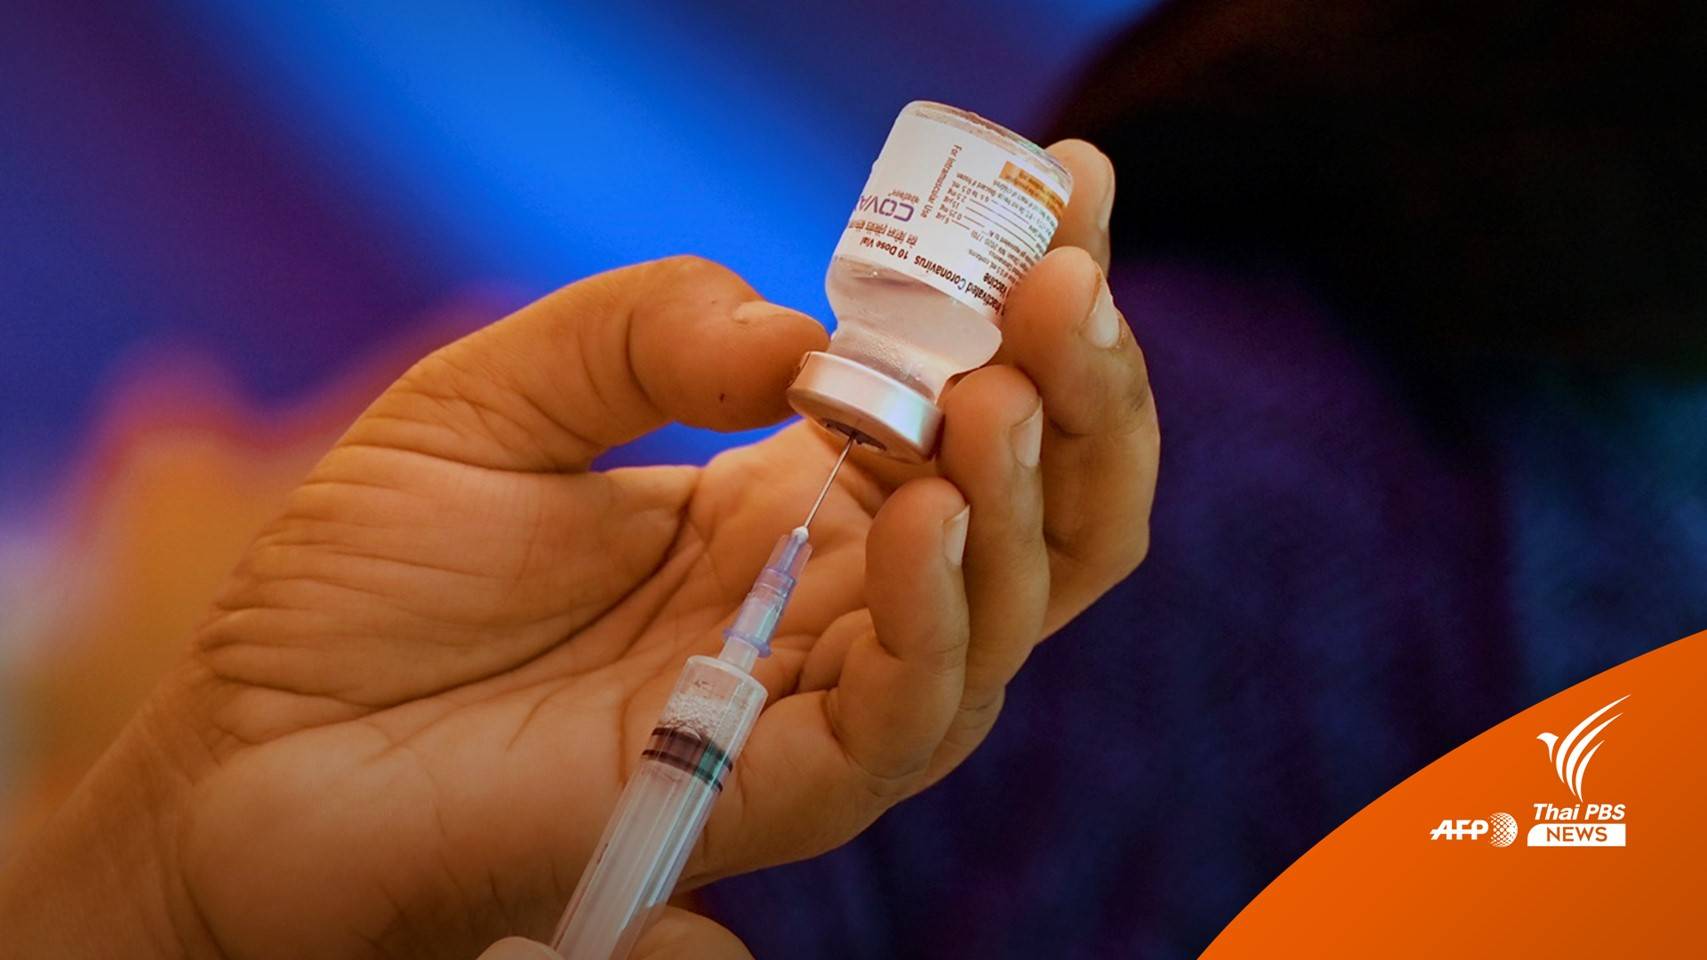 WHO อนุมัติใช้ฉุกเฉินวัคซีน "โคแวกซิน" ของอินเดีย